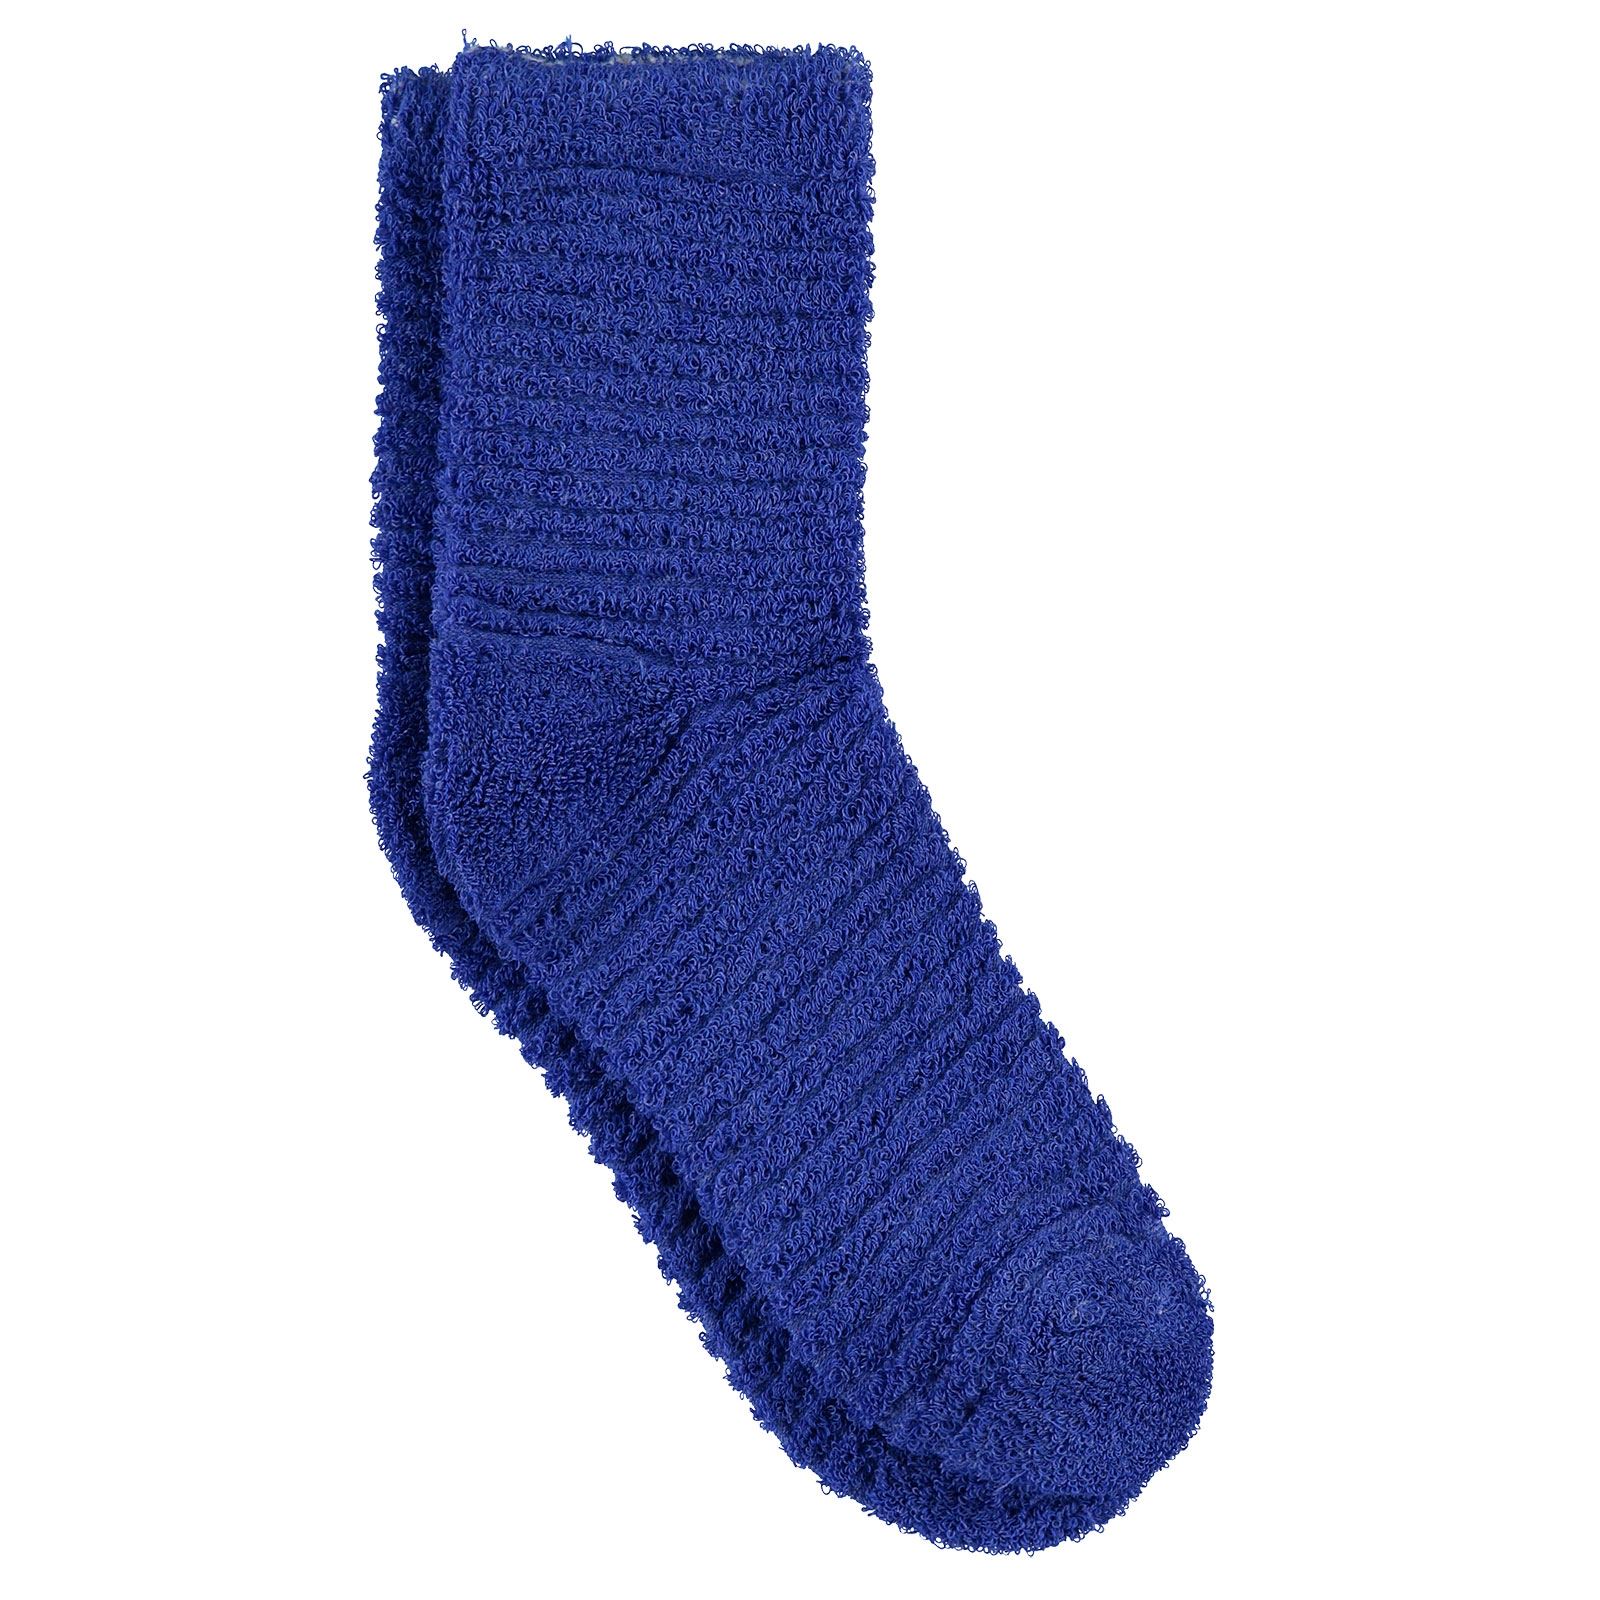 Bella Calze Kız Çocuk Ters Havlu Soket Çorap 36-40 Numara Saks Mavisi